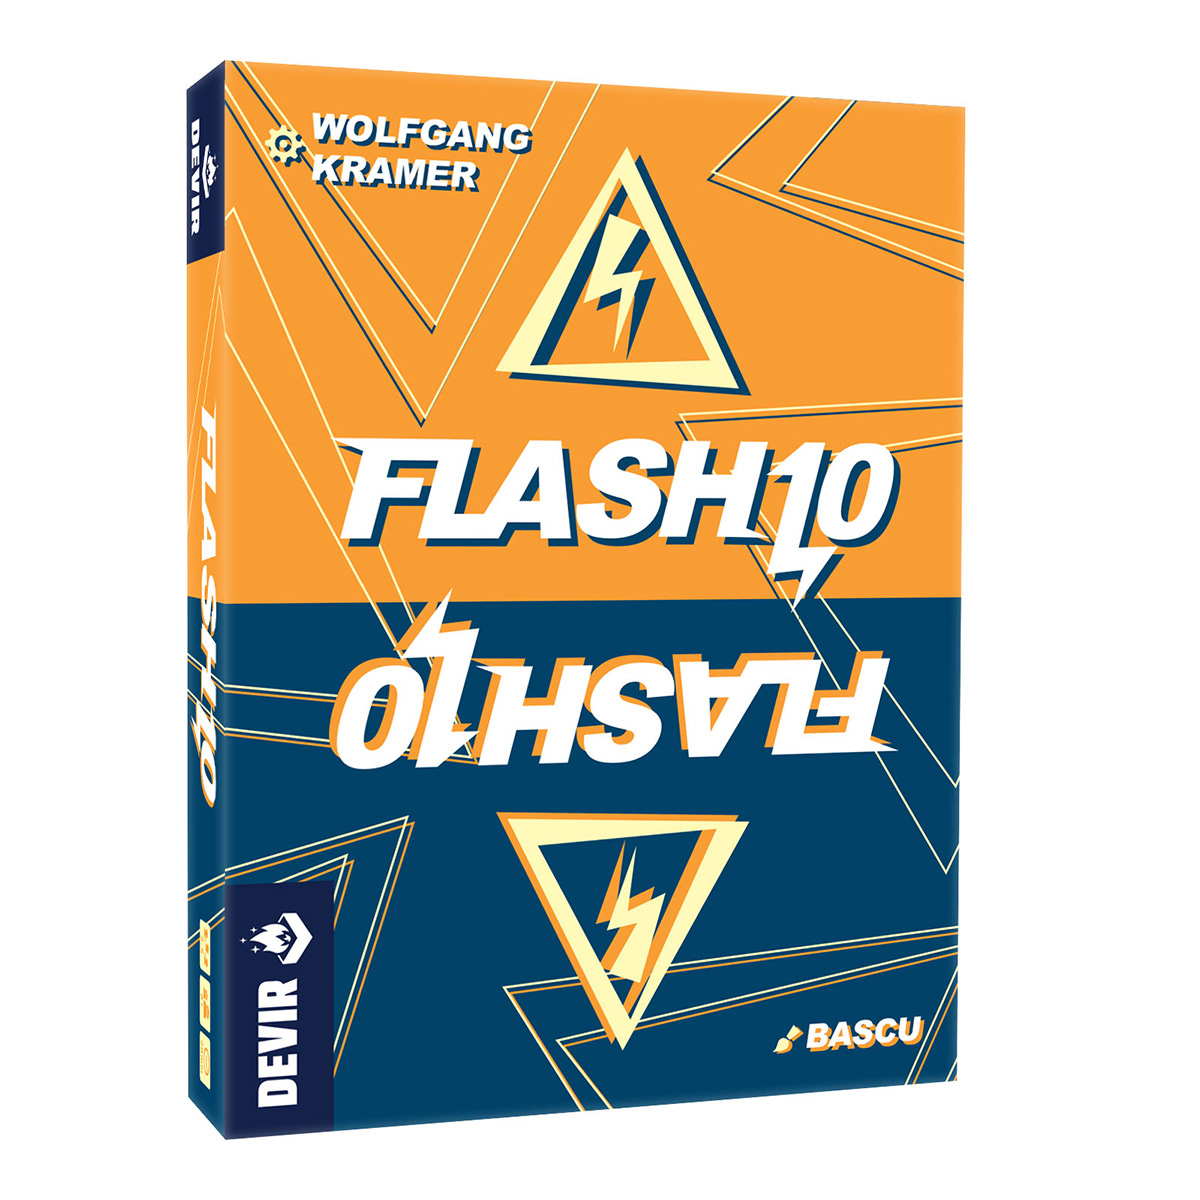 Juego de Mesa Flash 10